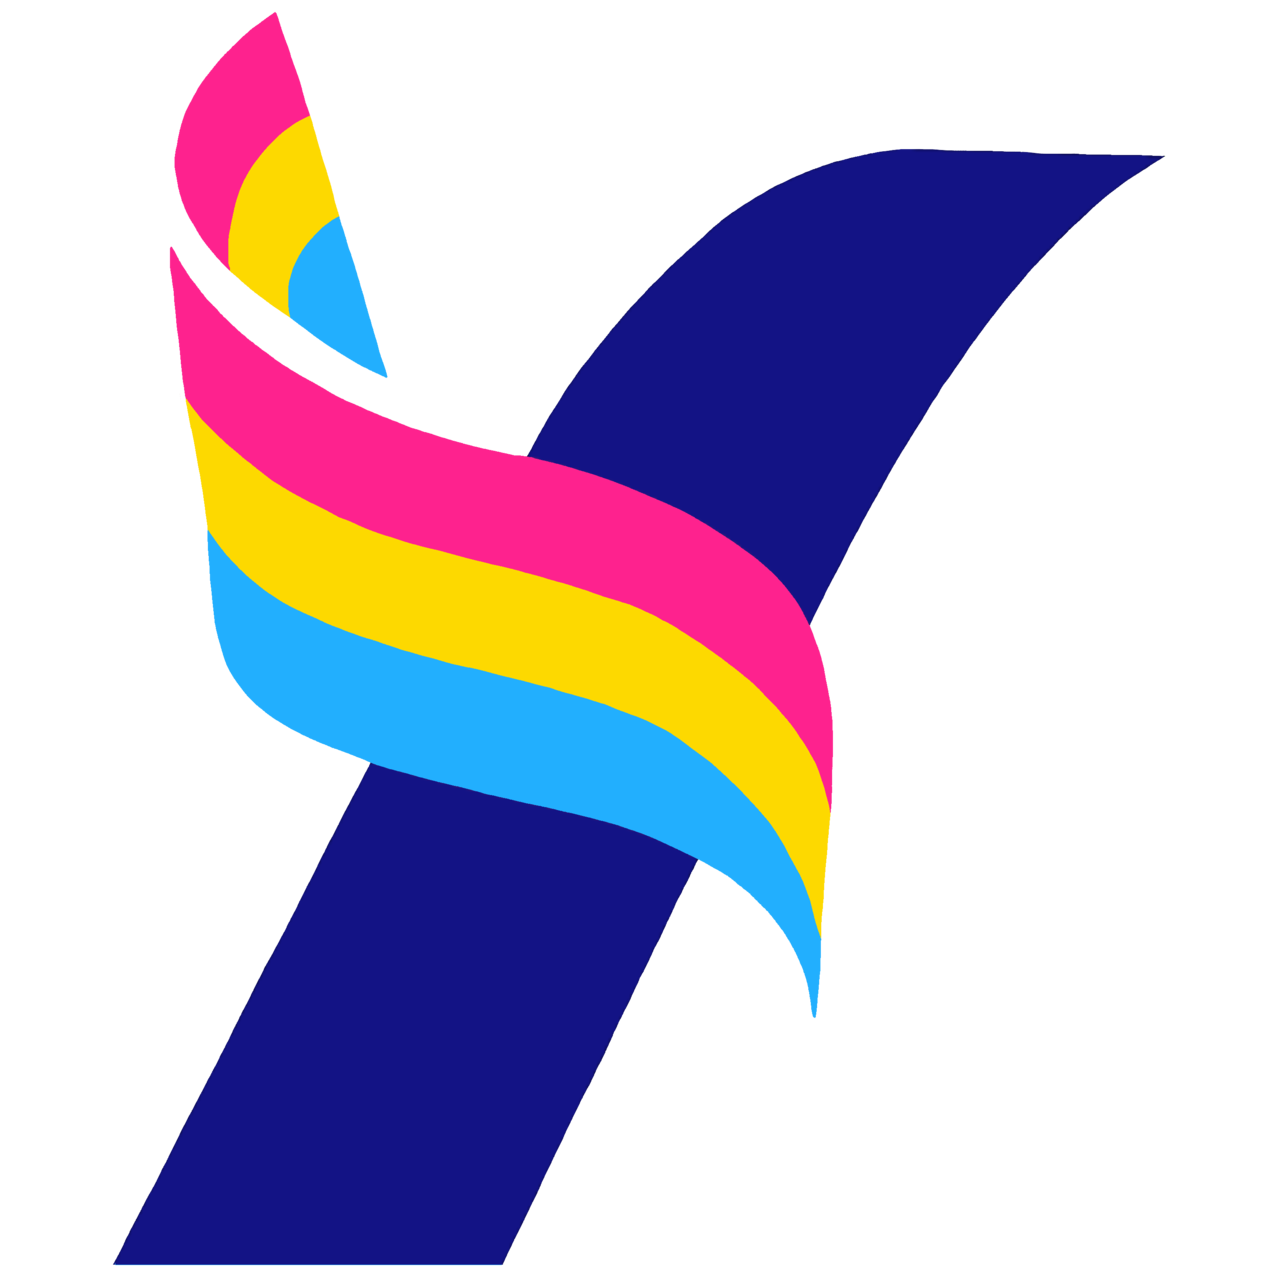 Yang2020 Official — Yang Pride Logo Set